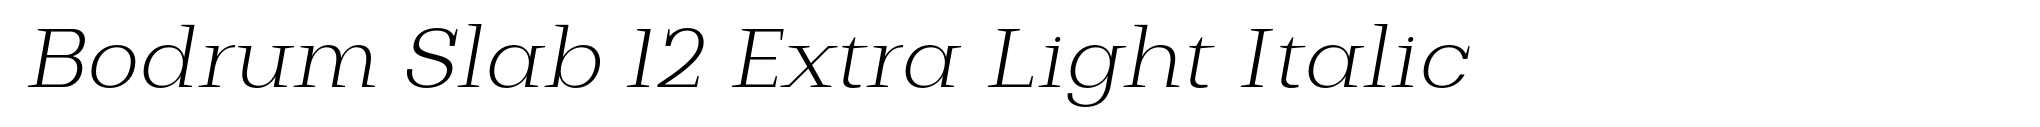 Bodrum Slab 12 Extra Light Italic image